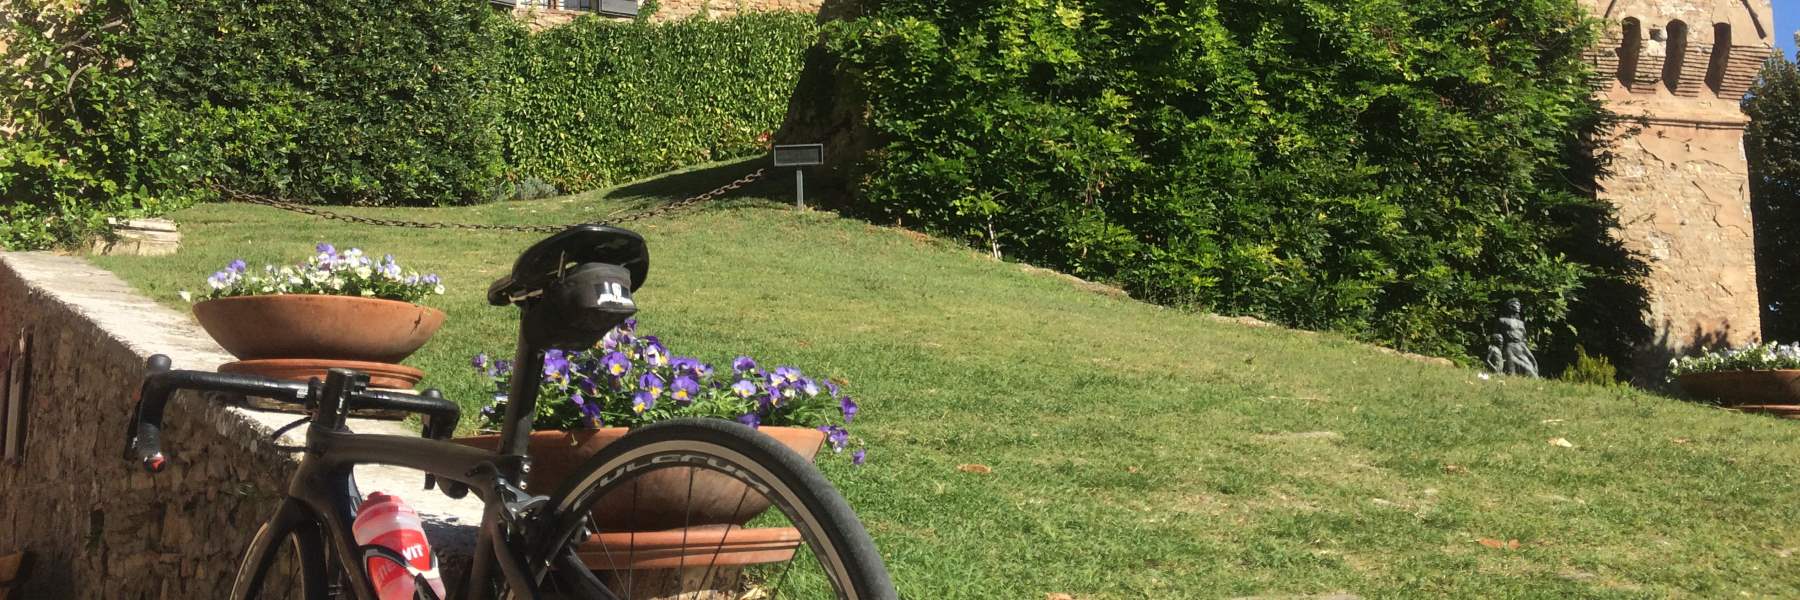 Malatesta Tour, en vélo parmi le chateaux de la Romagne